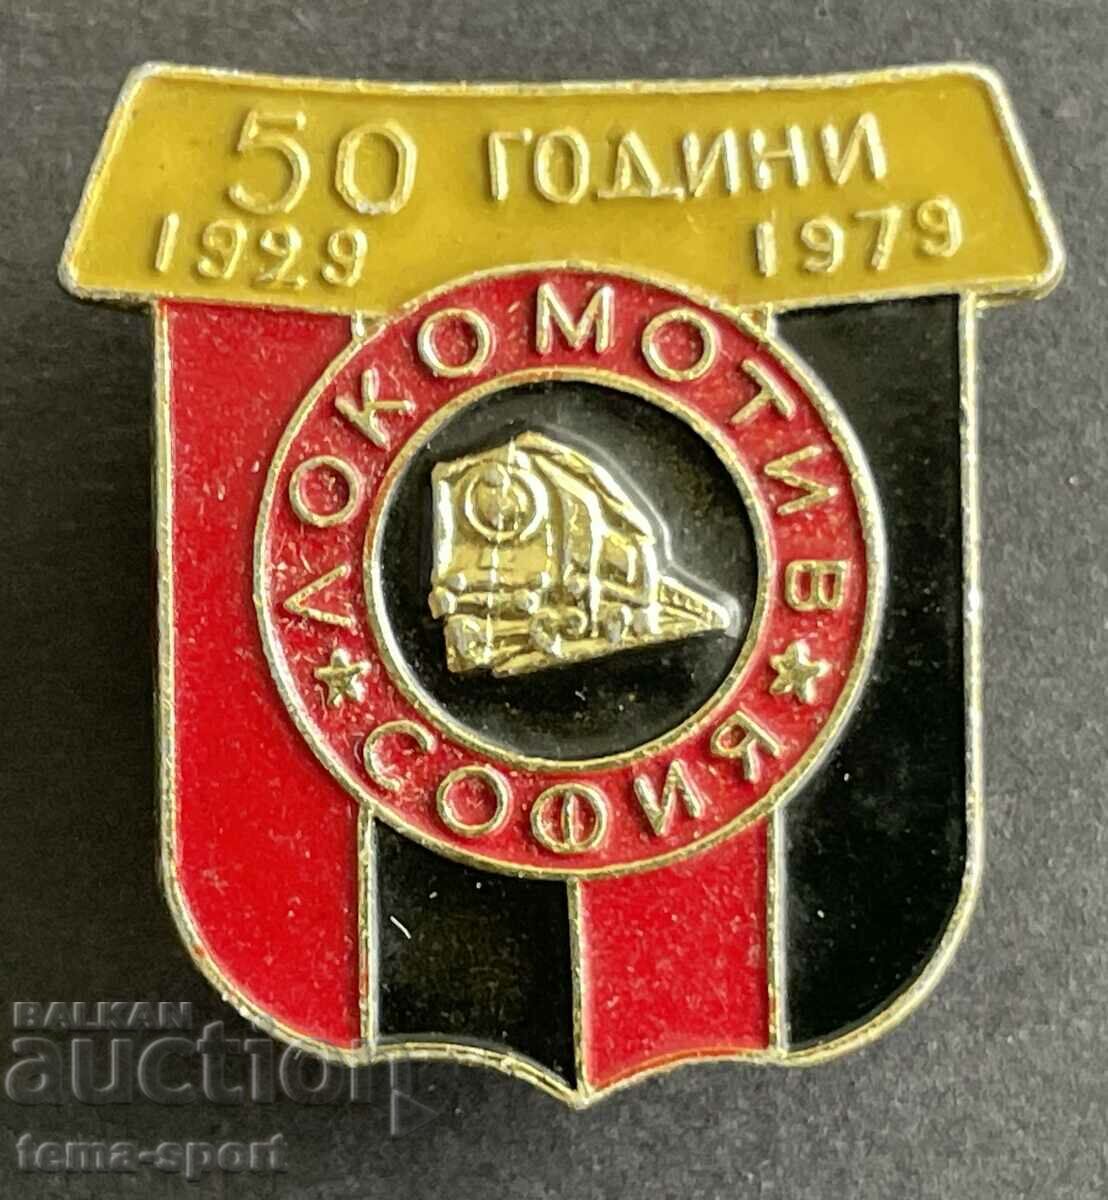 143 Βουλγαρία υπογραφή 70 ποδοσφαιρικός σύλλογος Lokomotiv Sofia 1979